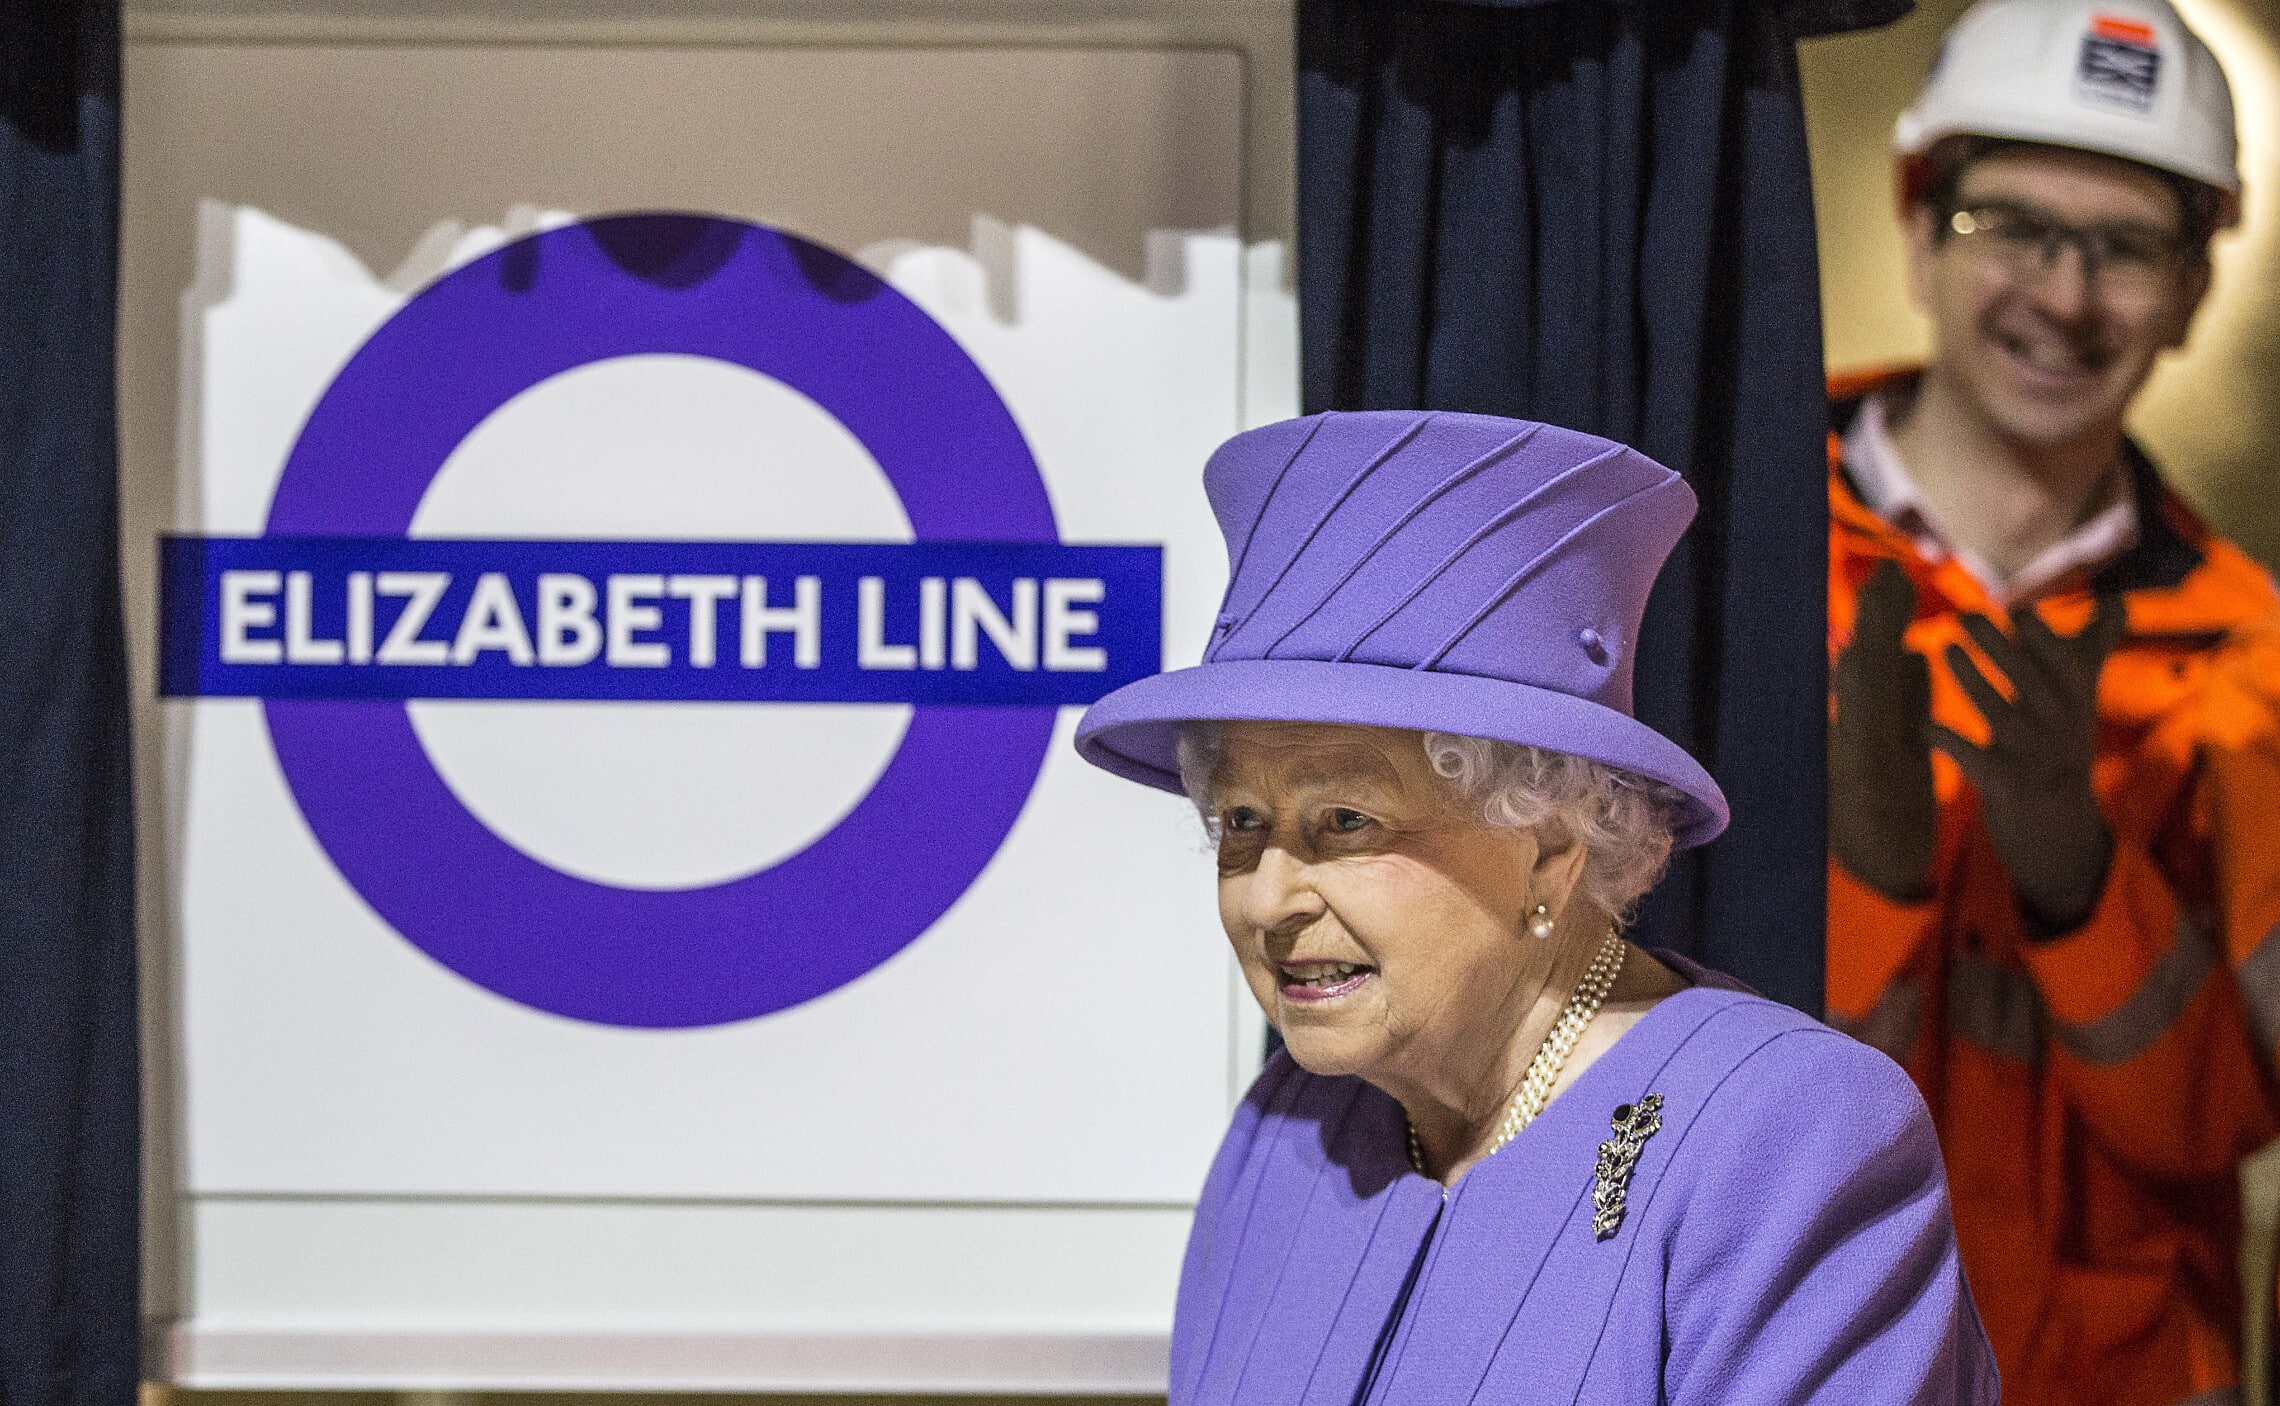 מלכת אנגליה אליזבת השנייה חונכת את העבודות על קו אליזבת החדש בלונדון, פברואר 2016 (צילום: Richard Pohle/pool via AP)